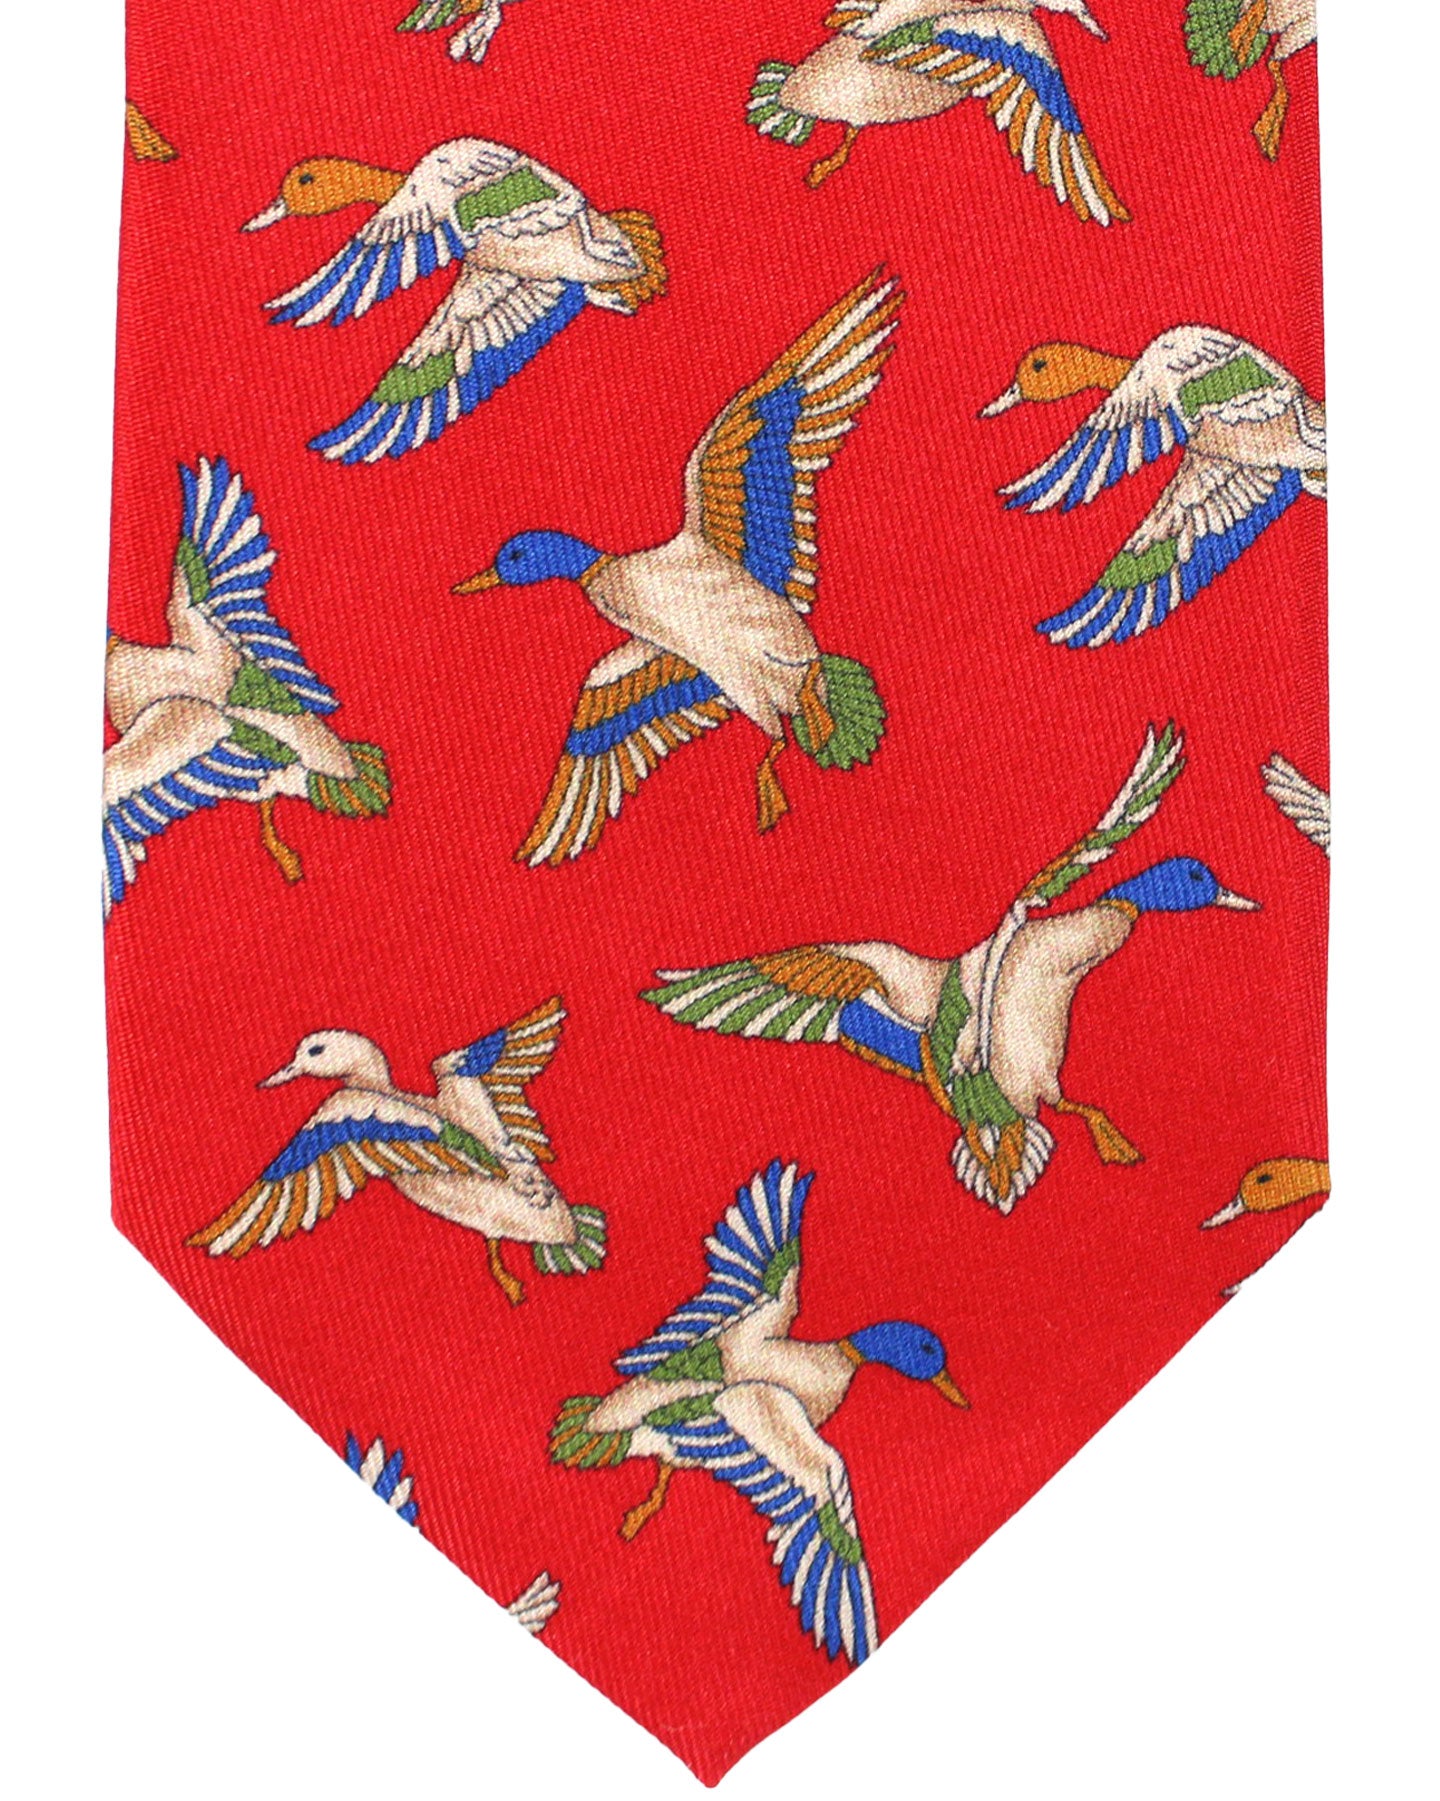 Salvatore Ferragamo Silk Tie Red Duck Novelty Design